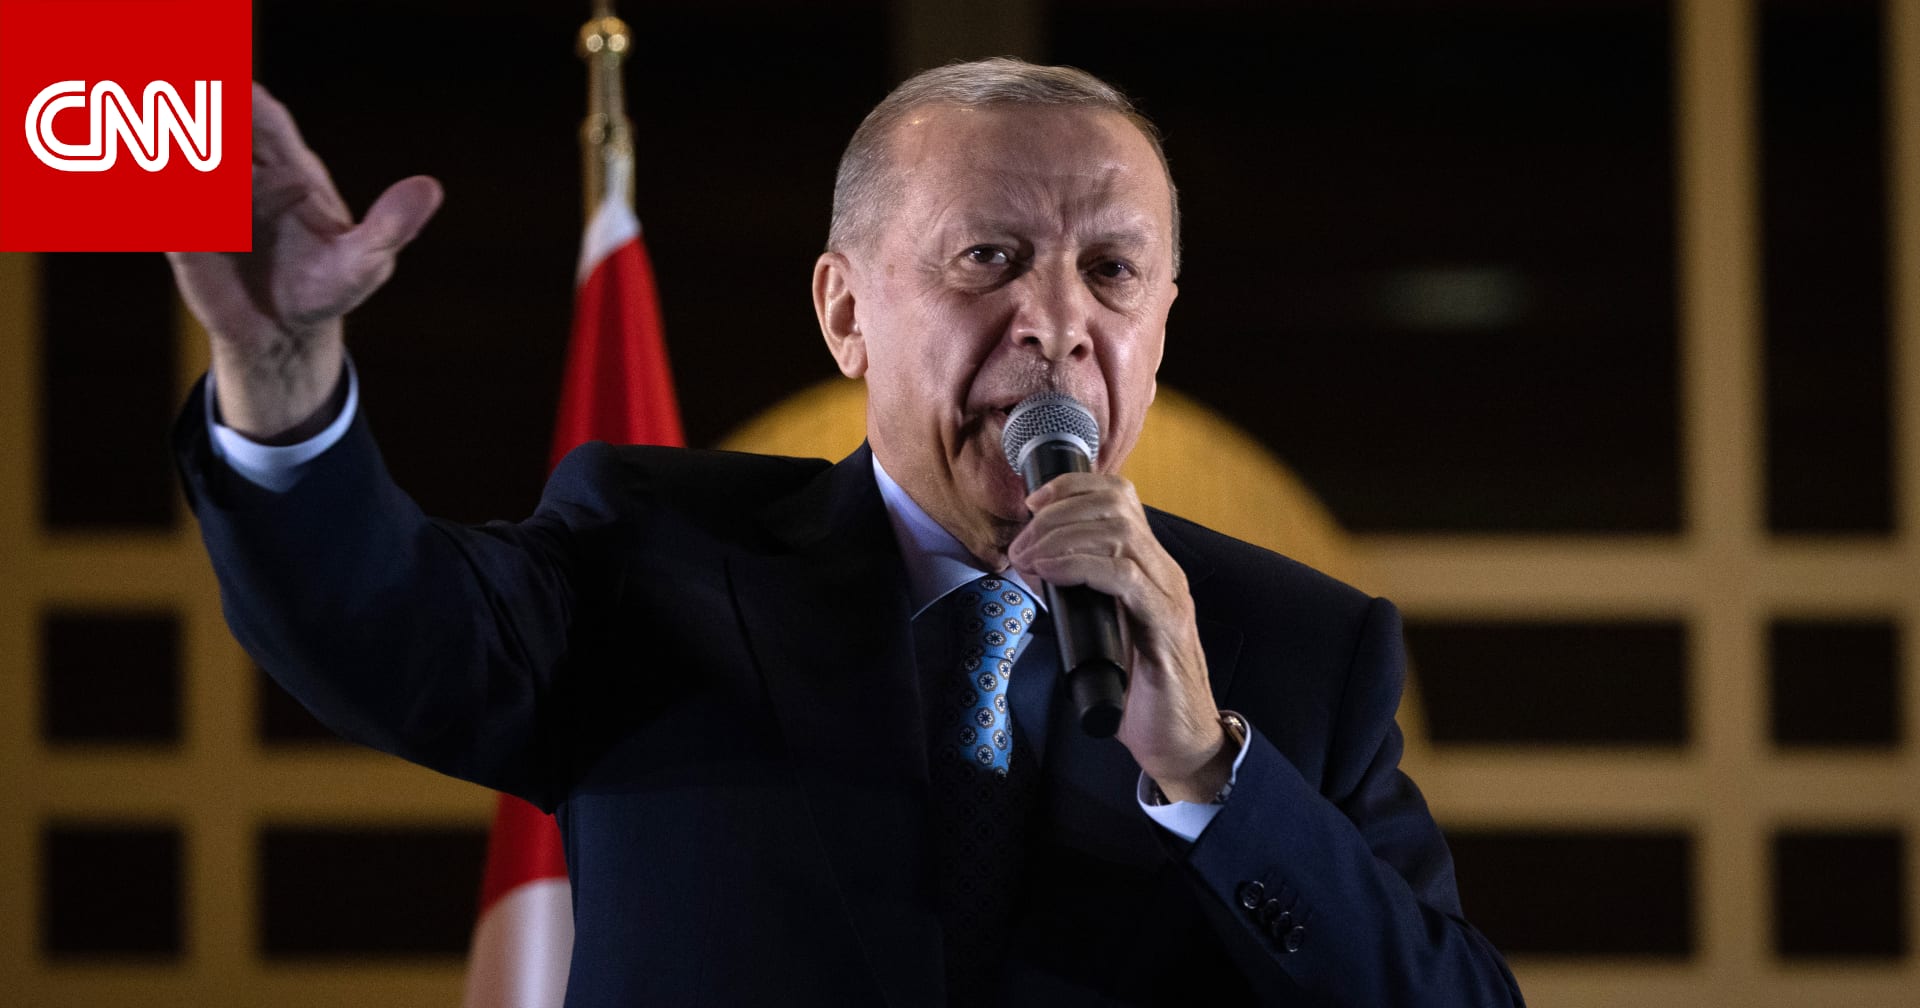 أردوغان يصف إسرائيل بـ"دولة إرهاب" ويتعهد بالعمل على "عزلها" دوليا ومحاكمة مسؤوليها